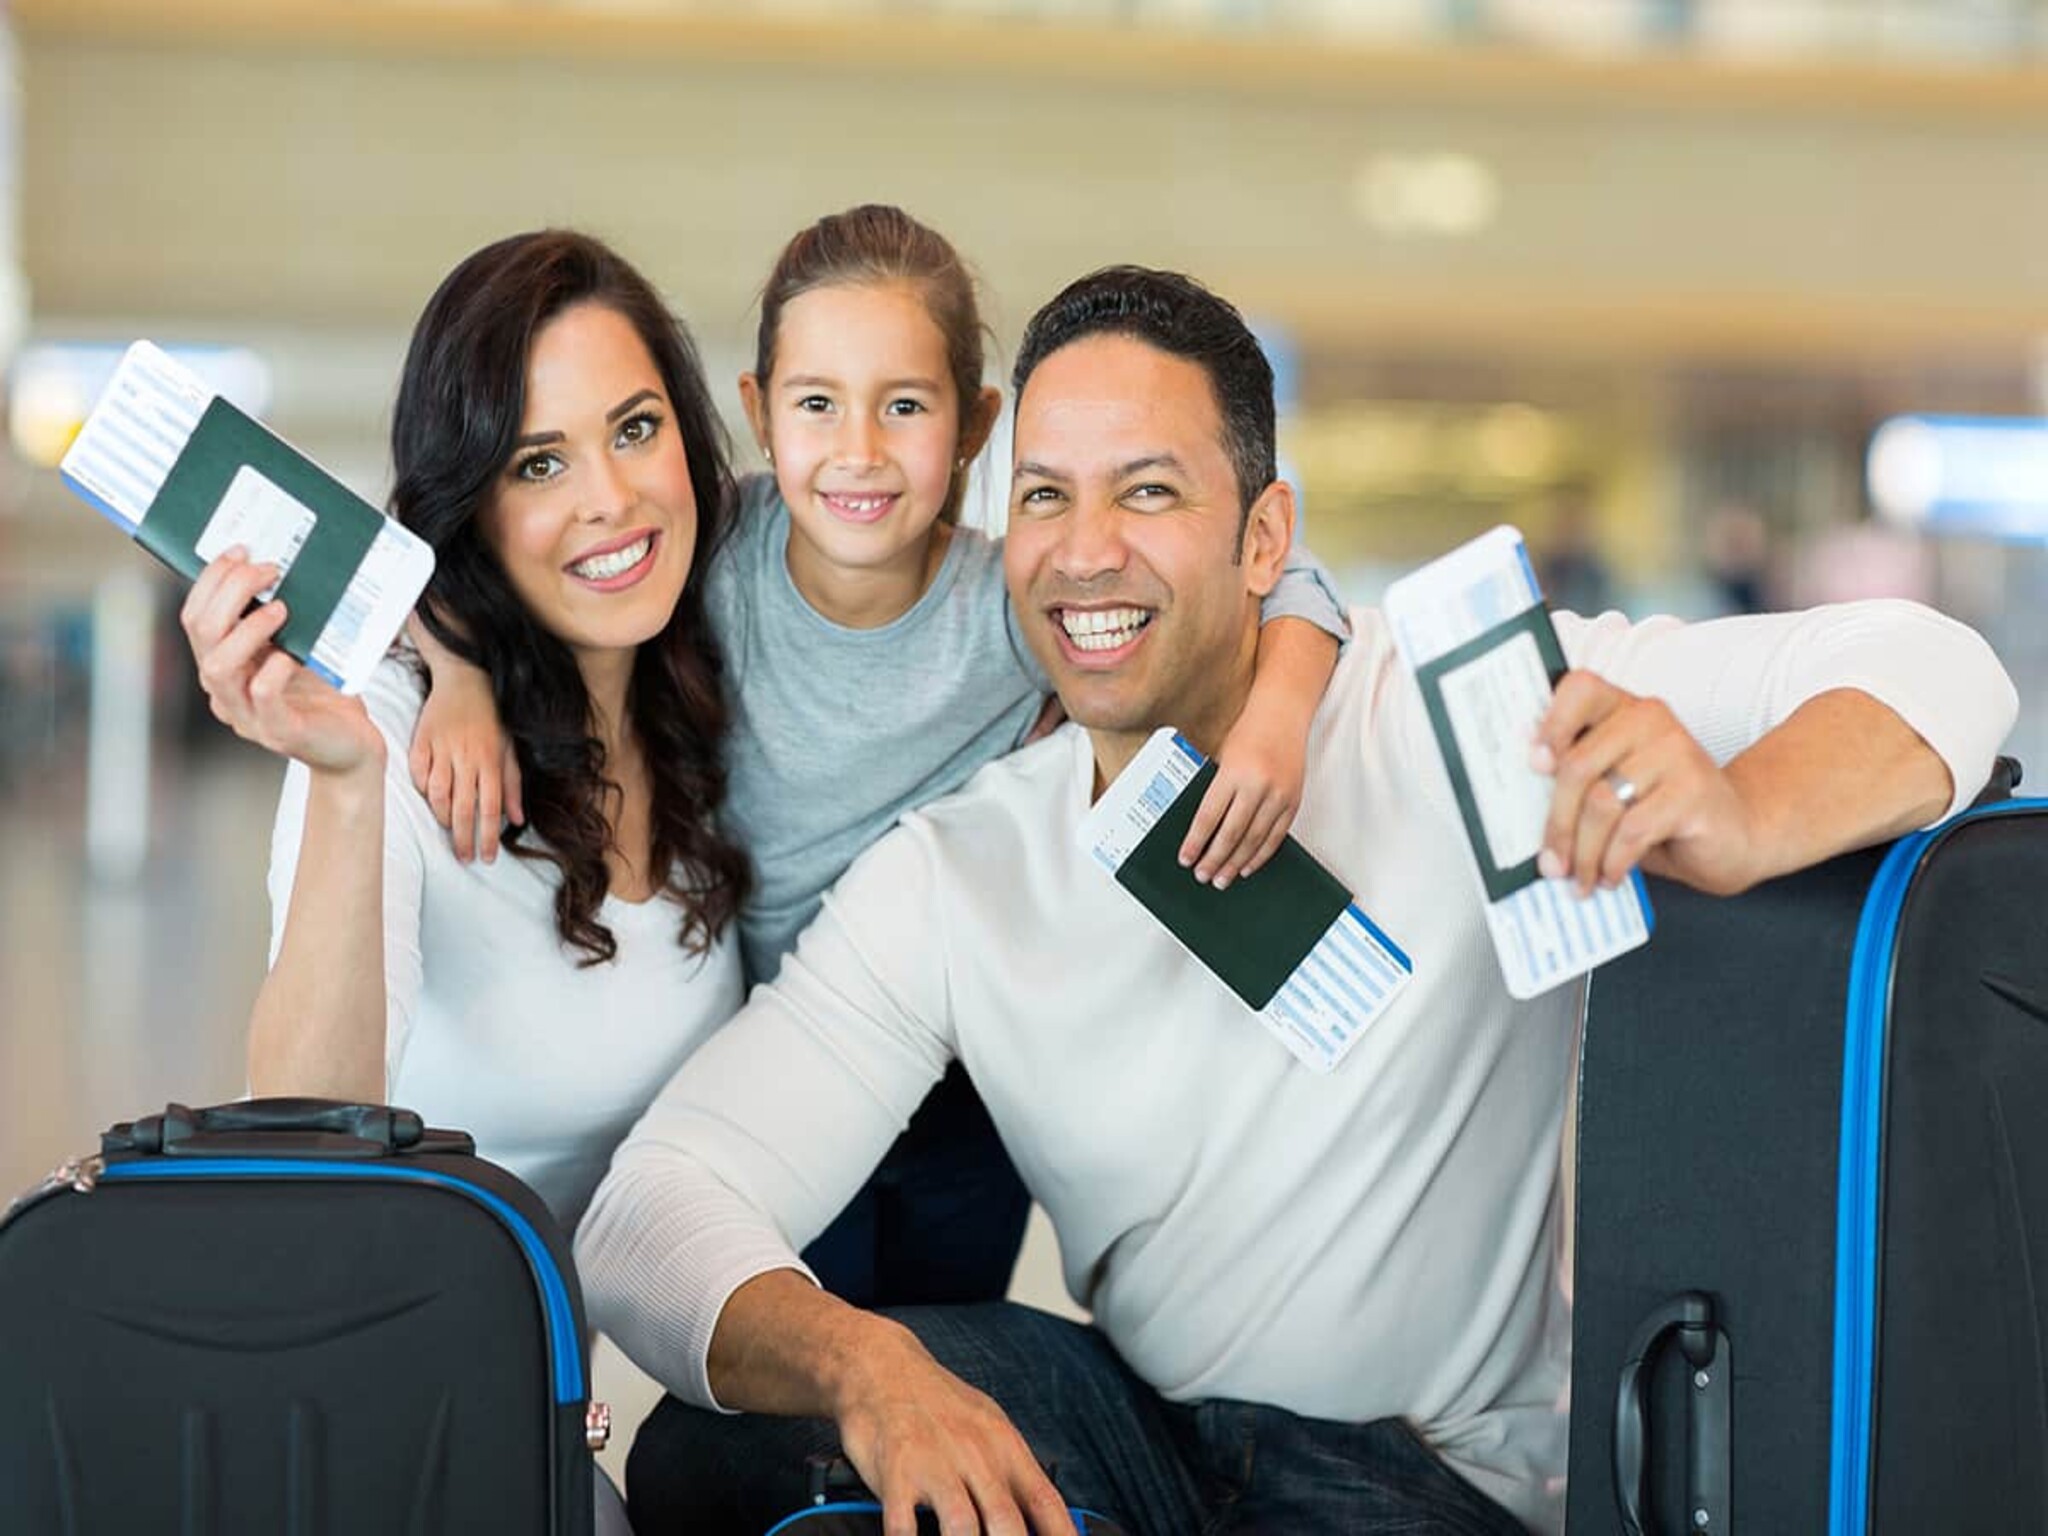 How to get UAE family residency visa